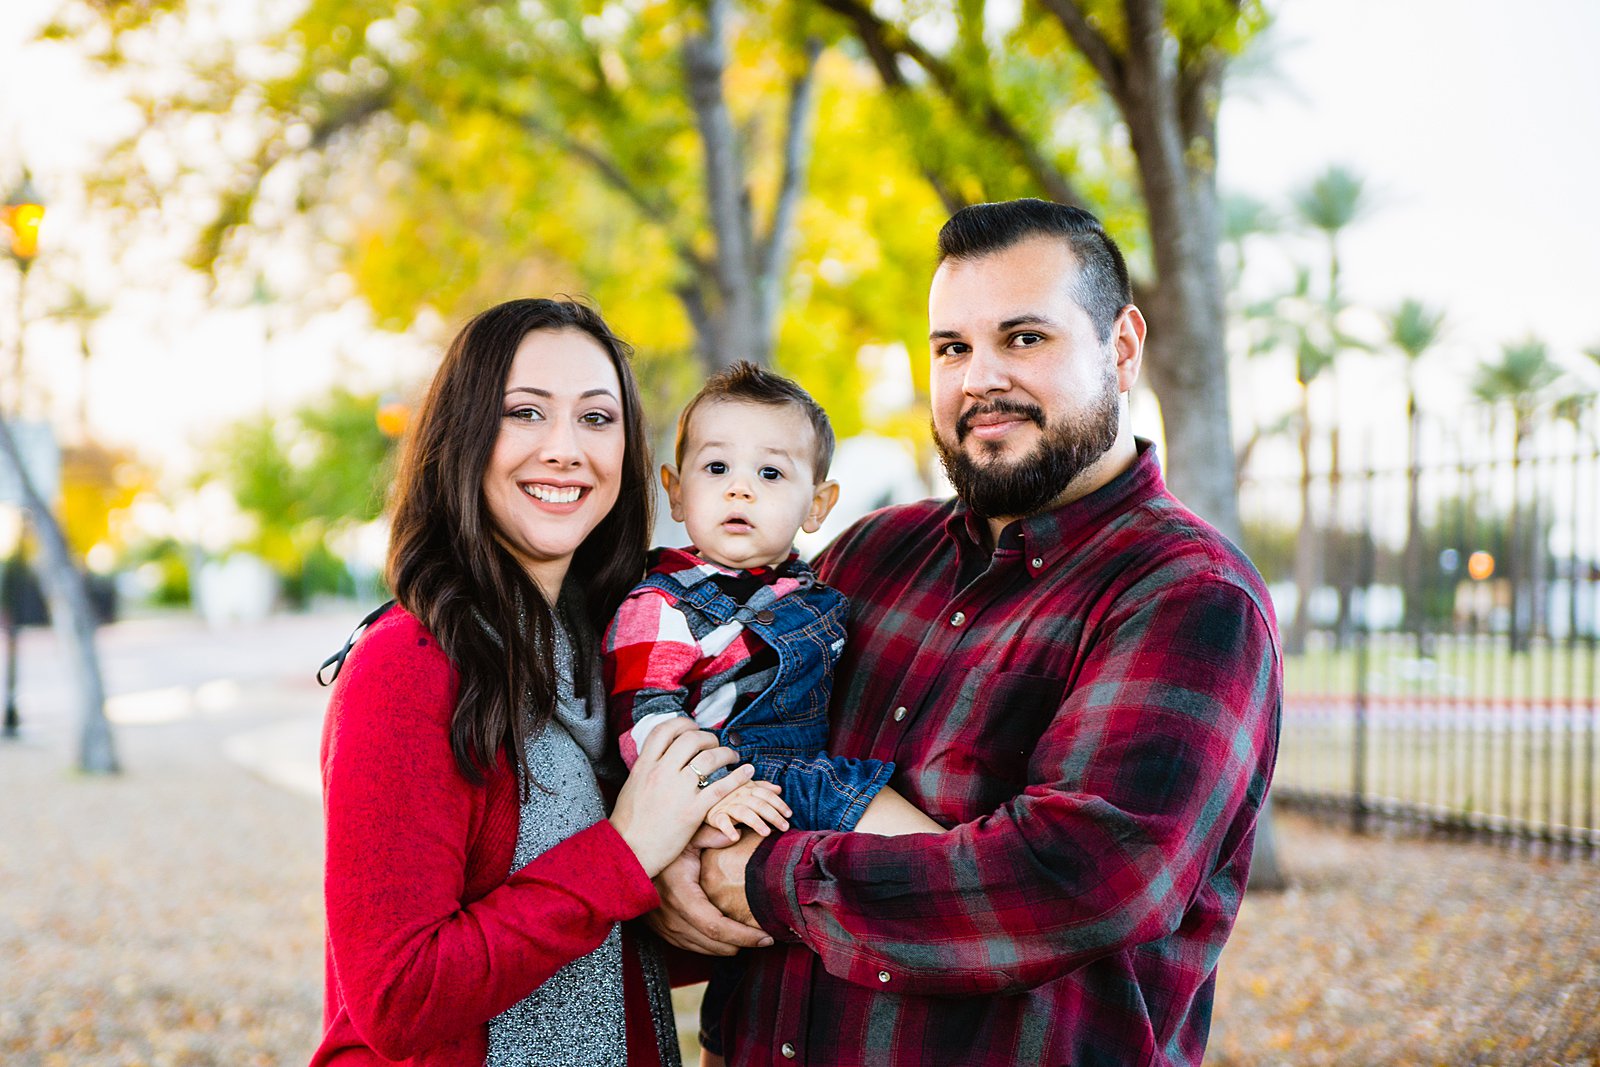 Fall family photography session at Sahuaro Ranch Park by Phoenix family photographer PMA Photography.